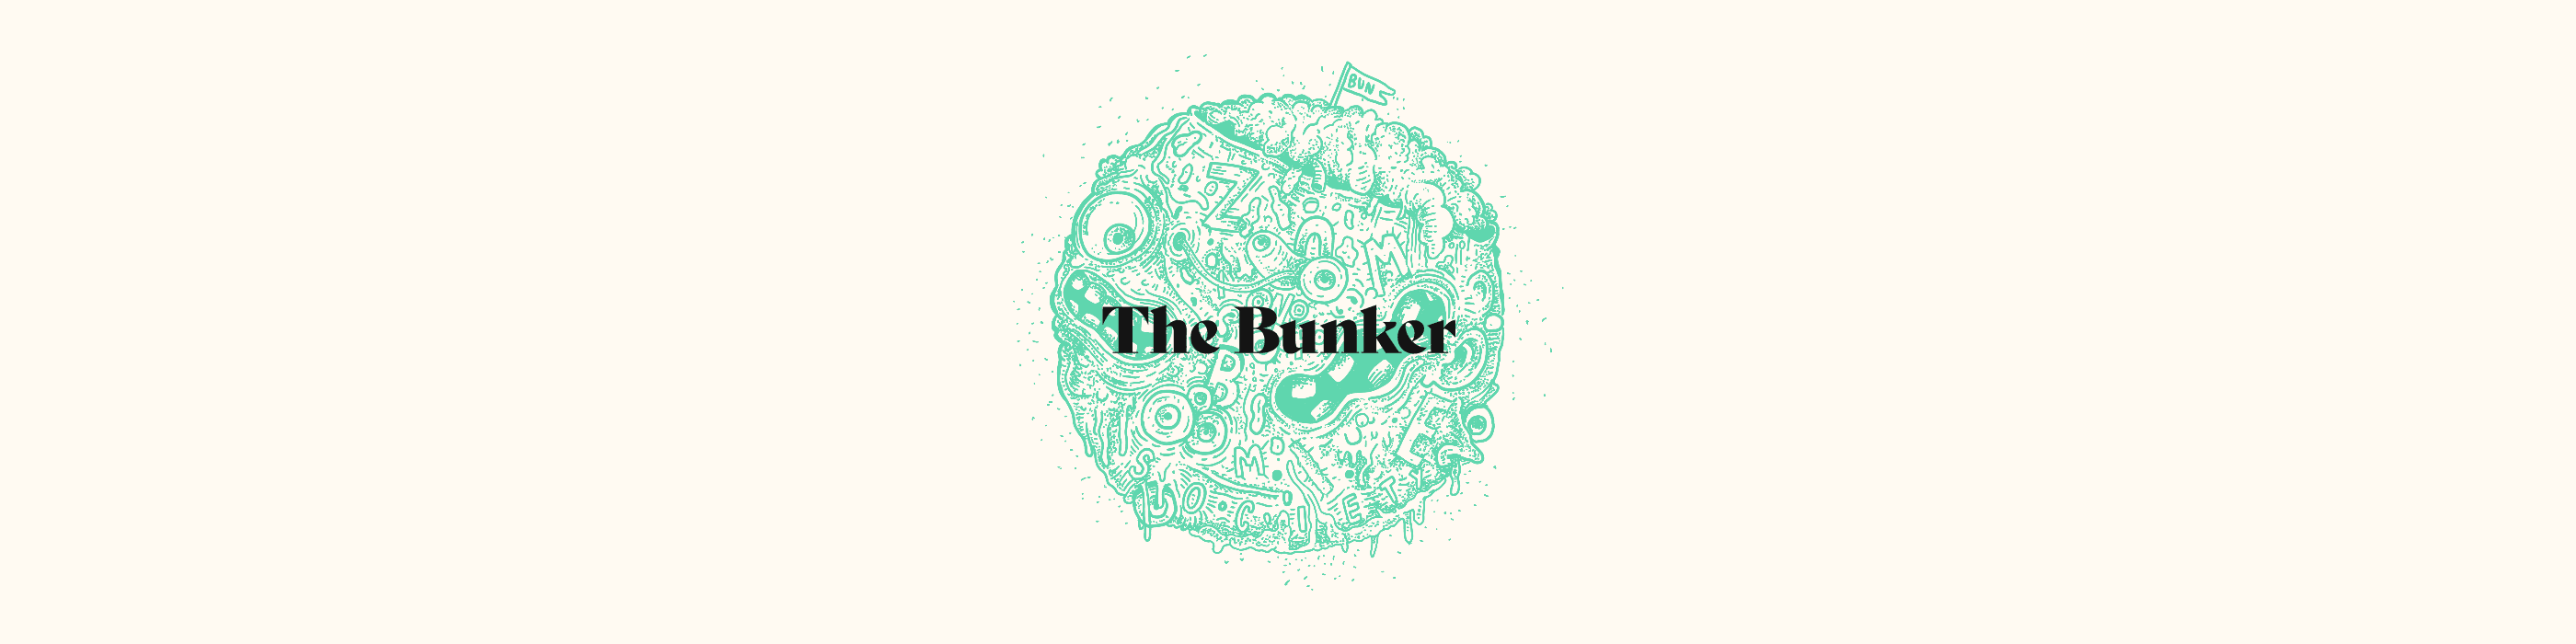 The_Bunker bannière